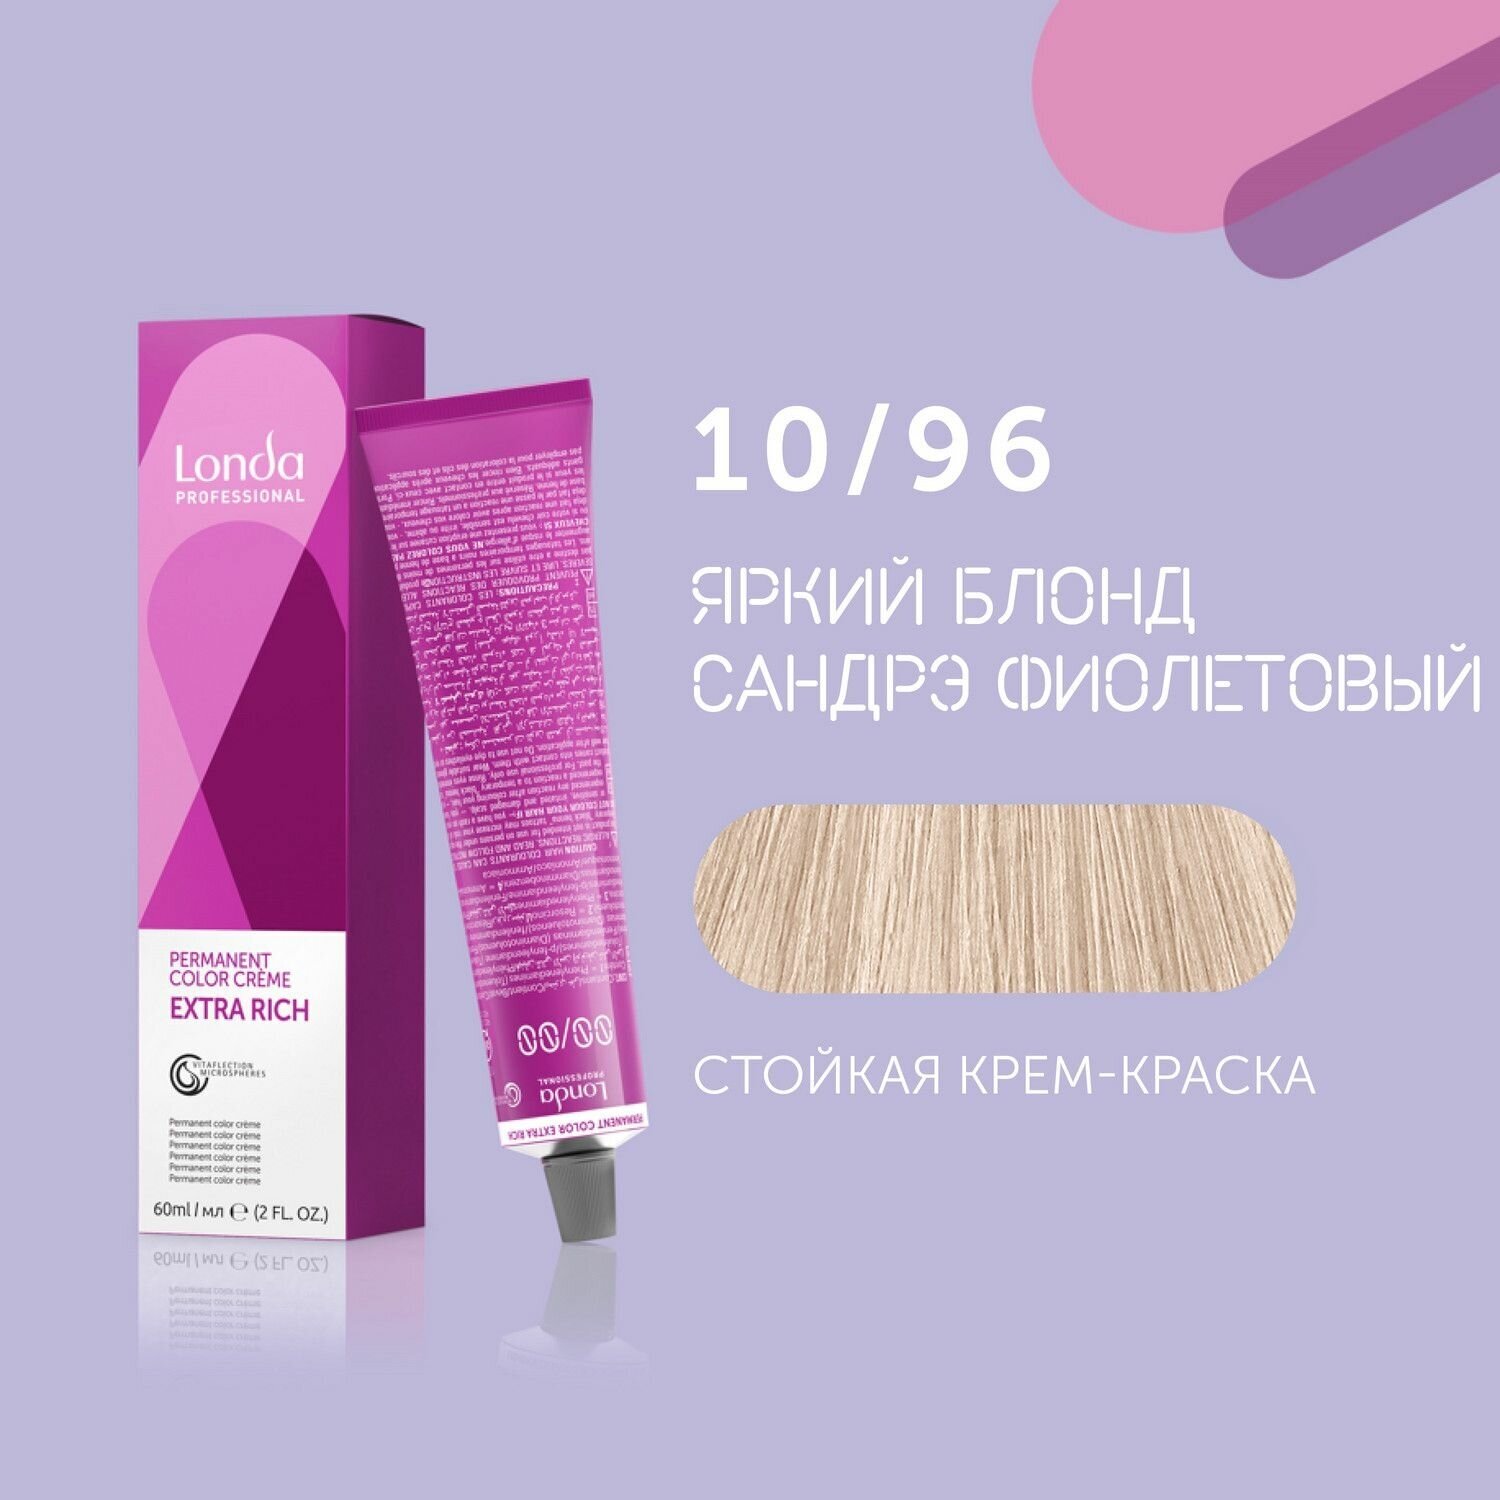 Стойкая крем-краска для волос Londa Professional, 10/96 яркий блонд сандрэ фиолетовый